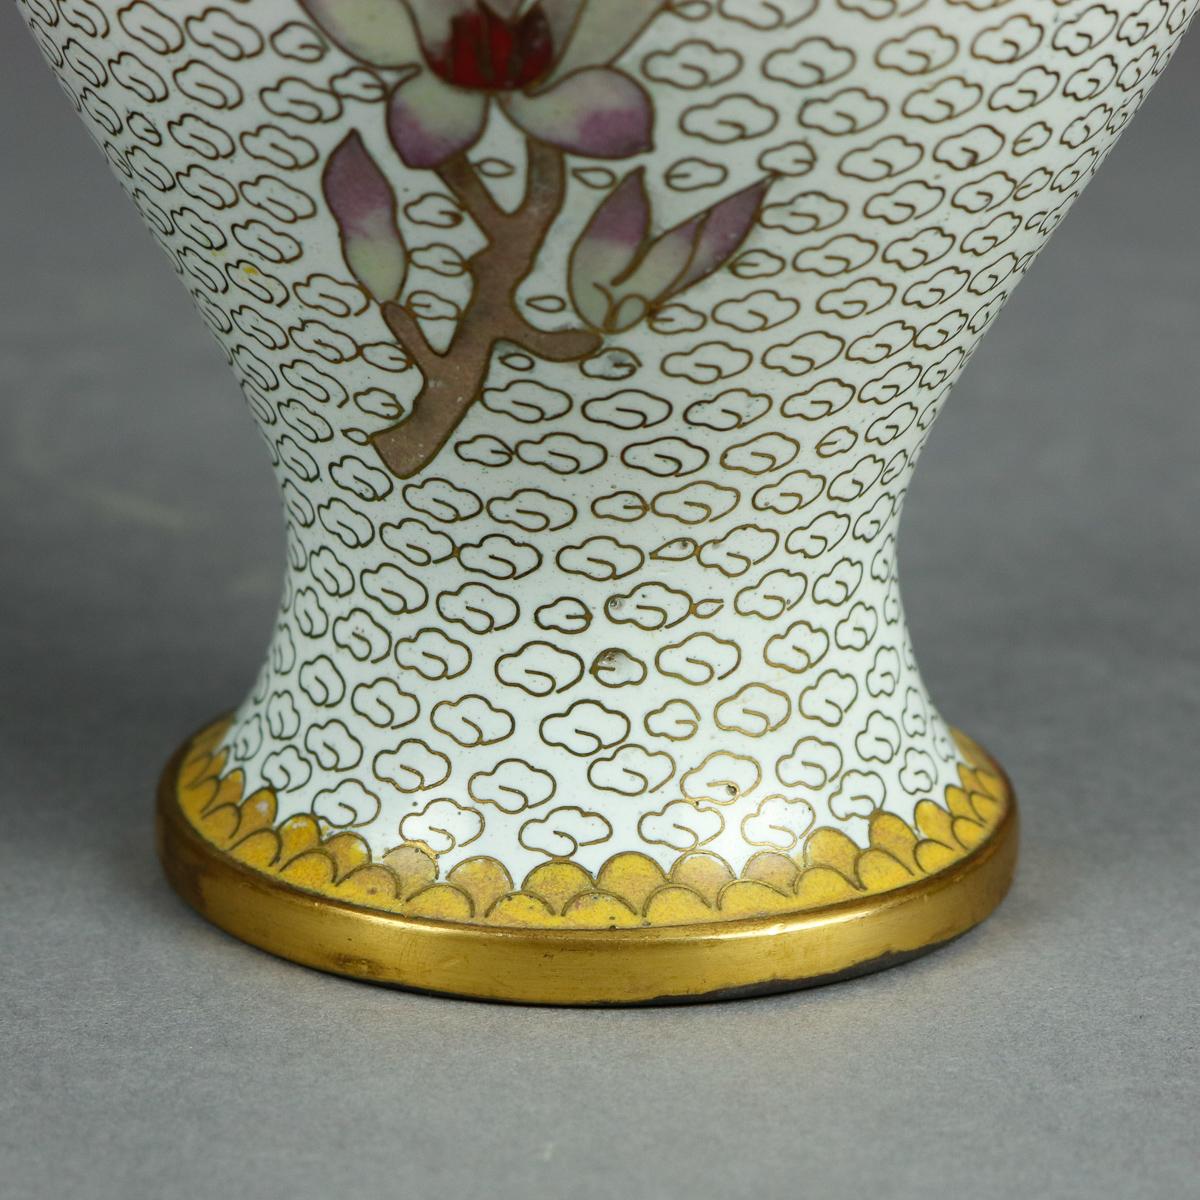 Vintage Chinese Cloisonne Floral Garden Enameled Brass Vase, Original Box 1